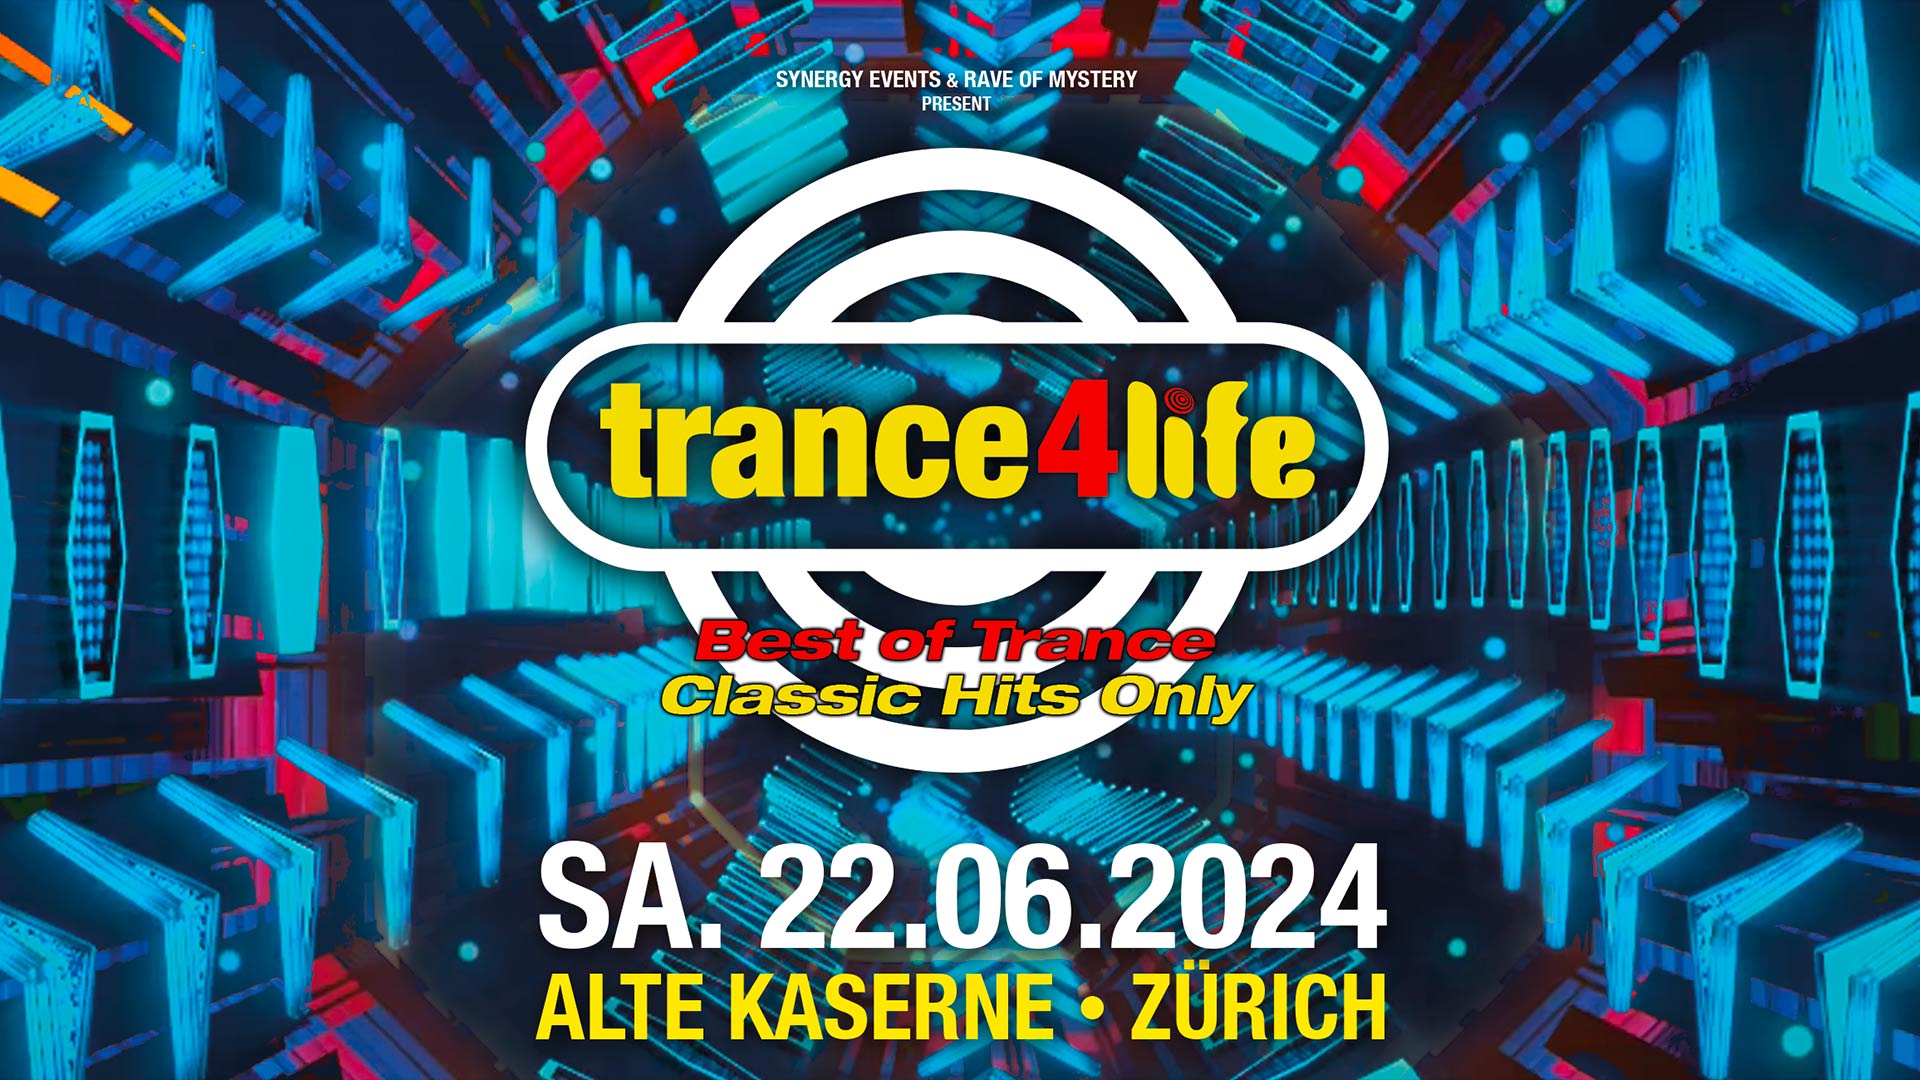 trance4life 'best of trance' @ Alte Kaserne, Zurich (22.06.2024)